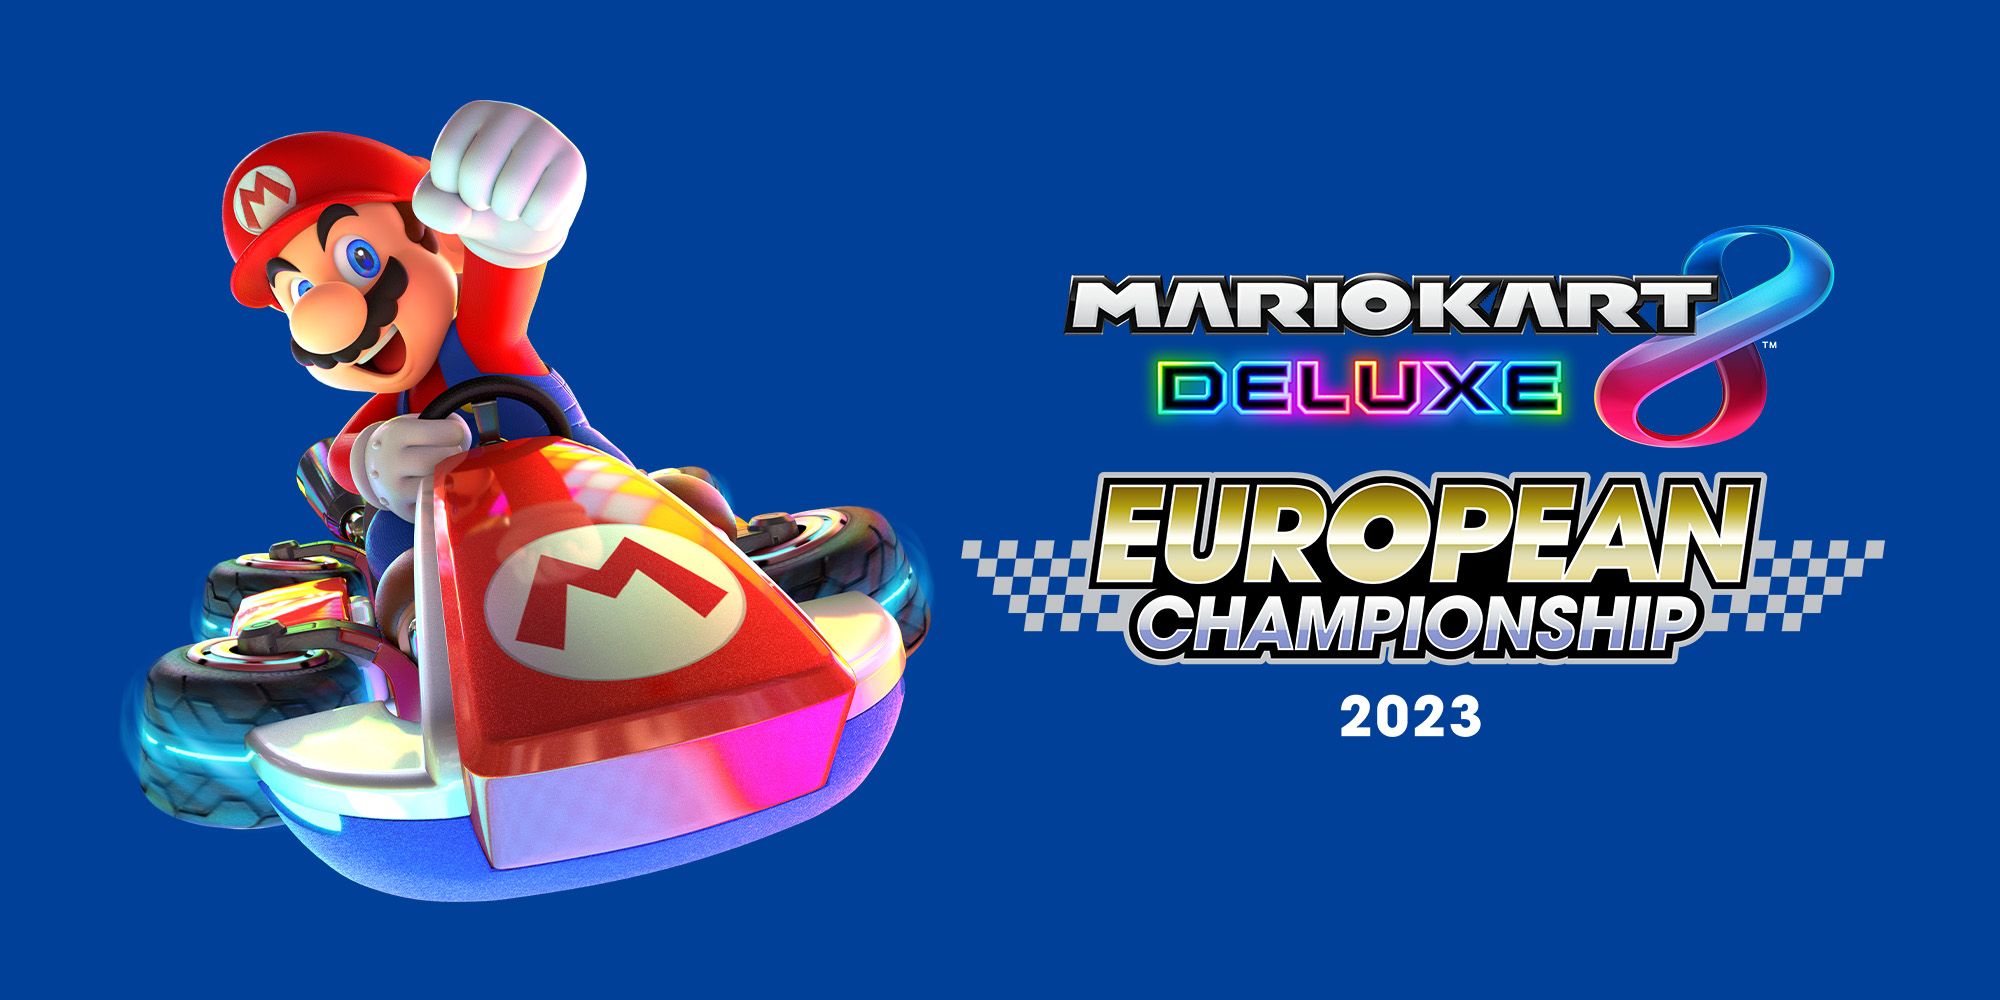 Det er bare å tørke støv av gasspedalen når Nintendo inviterer til europamesterskap i Mario Kart 8 Deluxe, første kvalifiseringsrunde starter allerede lørdag den 19. august!